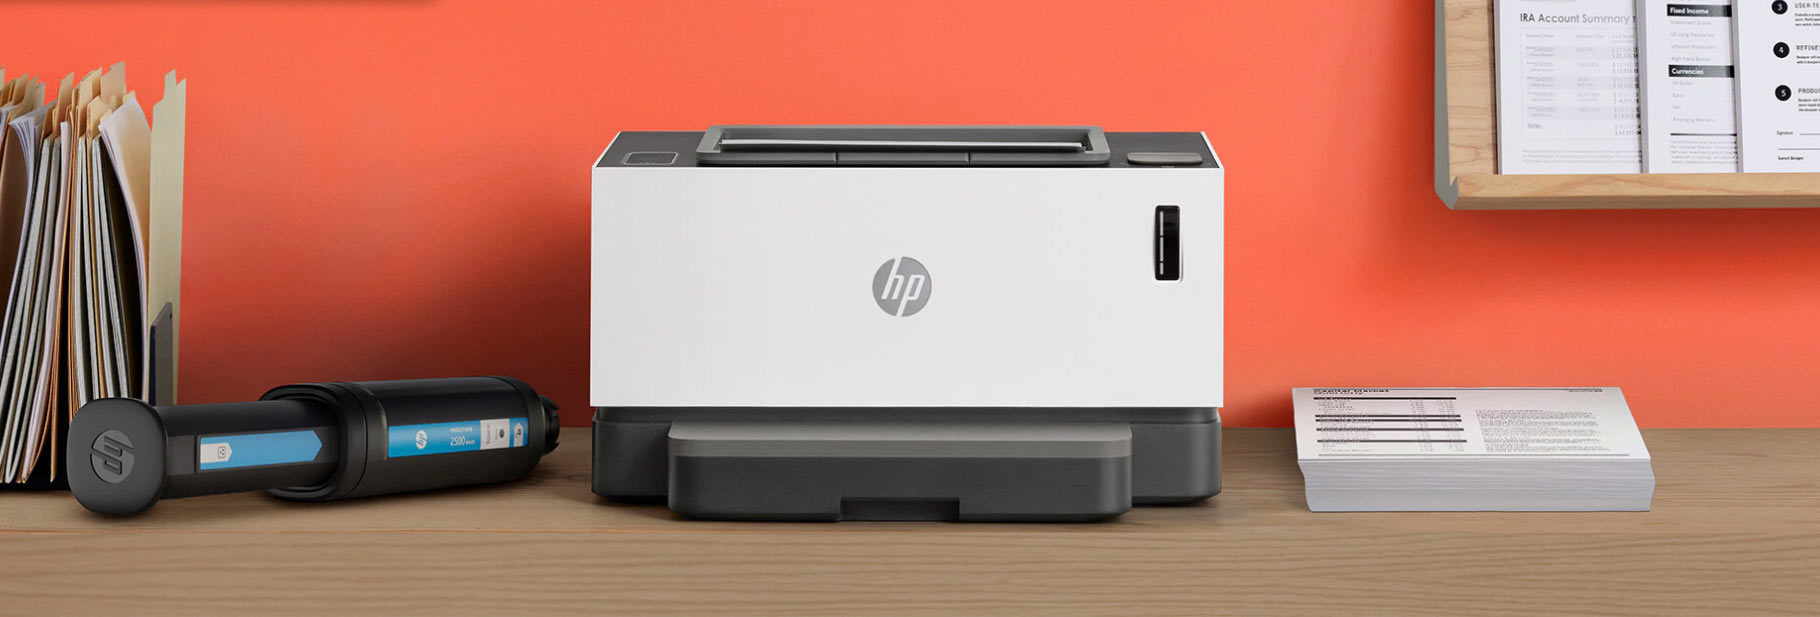 HP-Neverstop-Laser.jpg